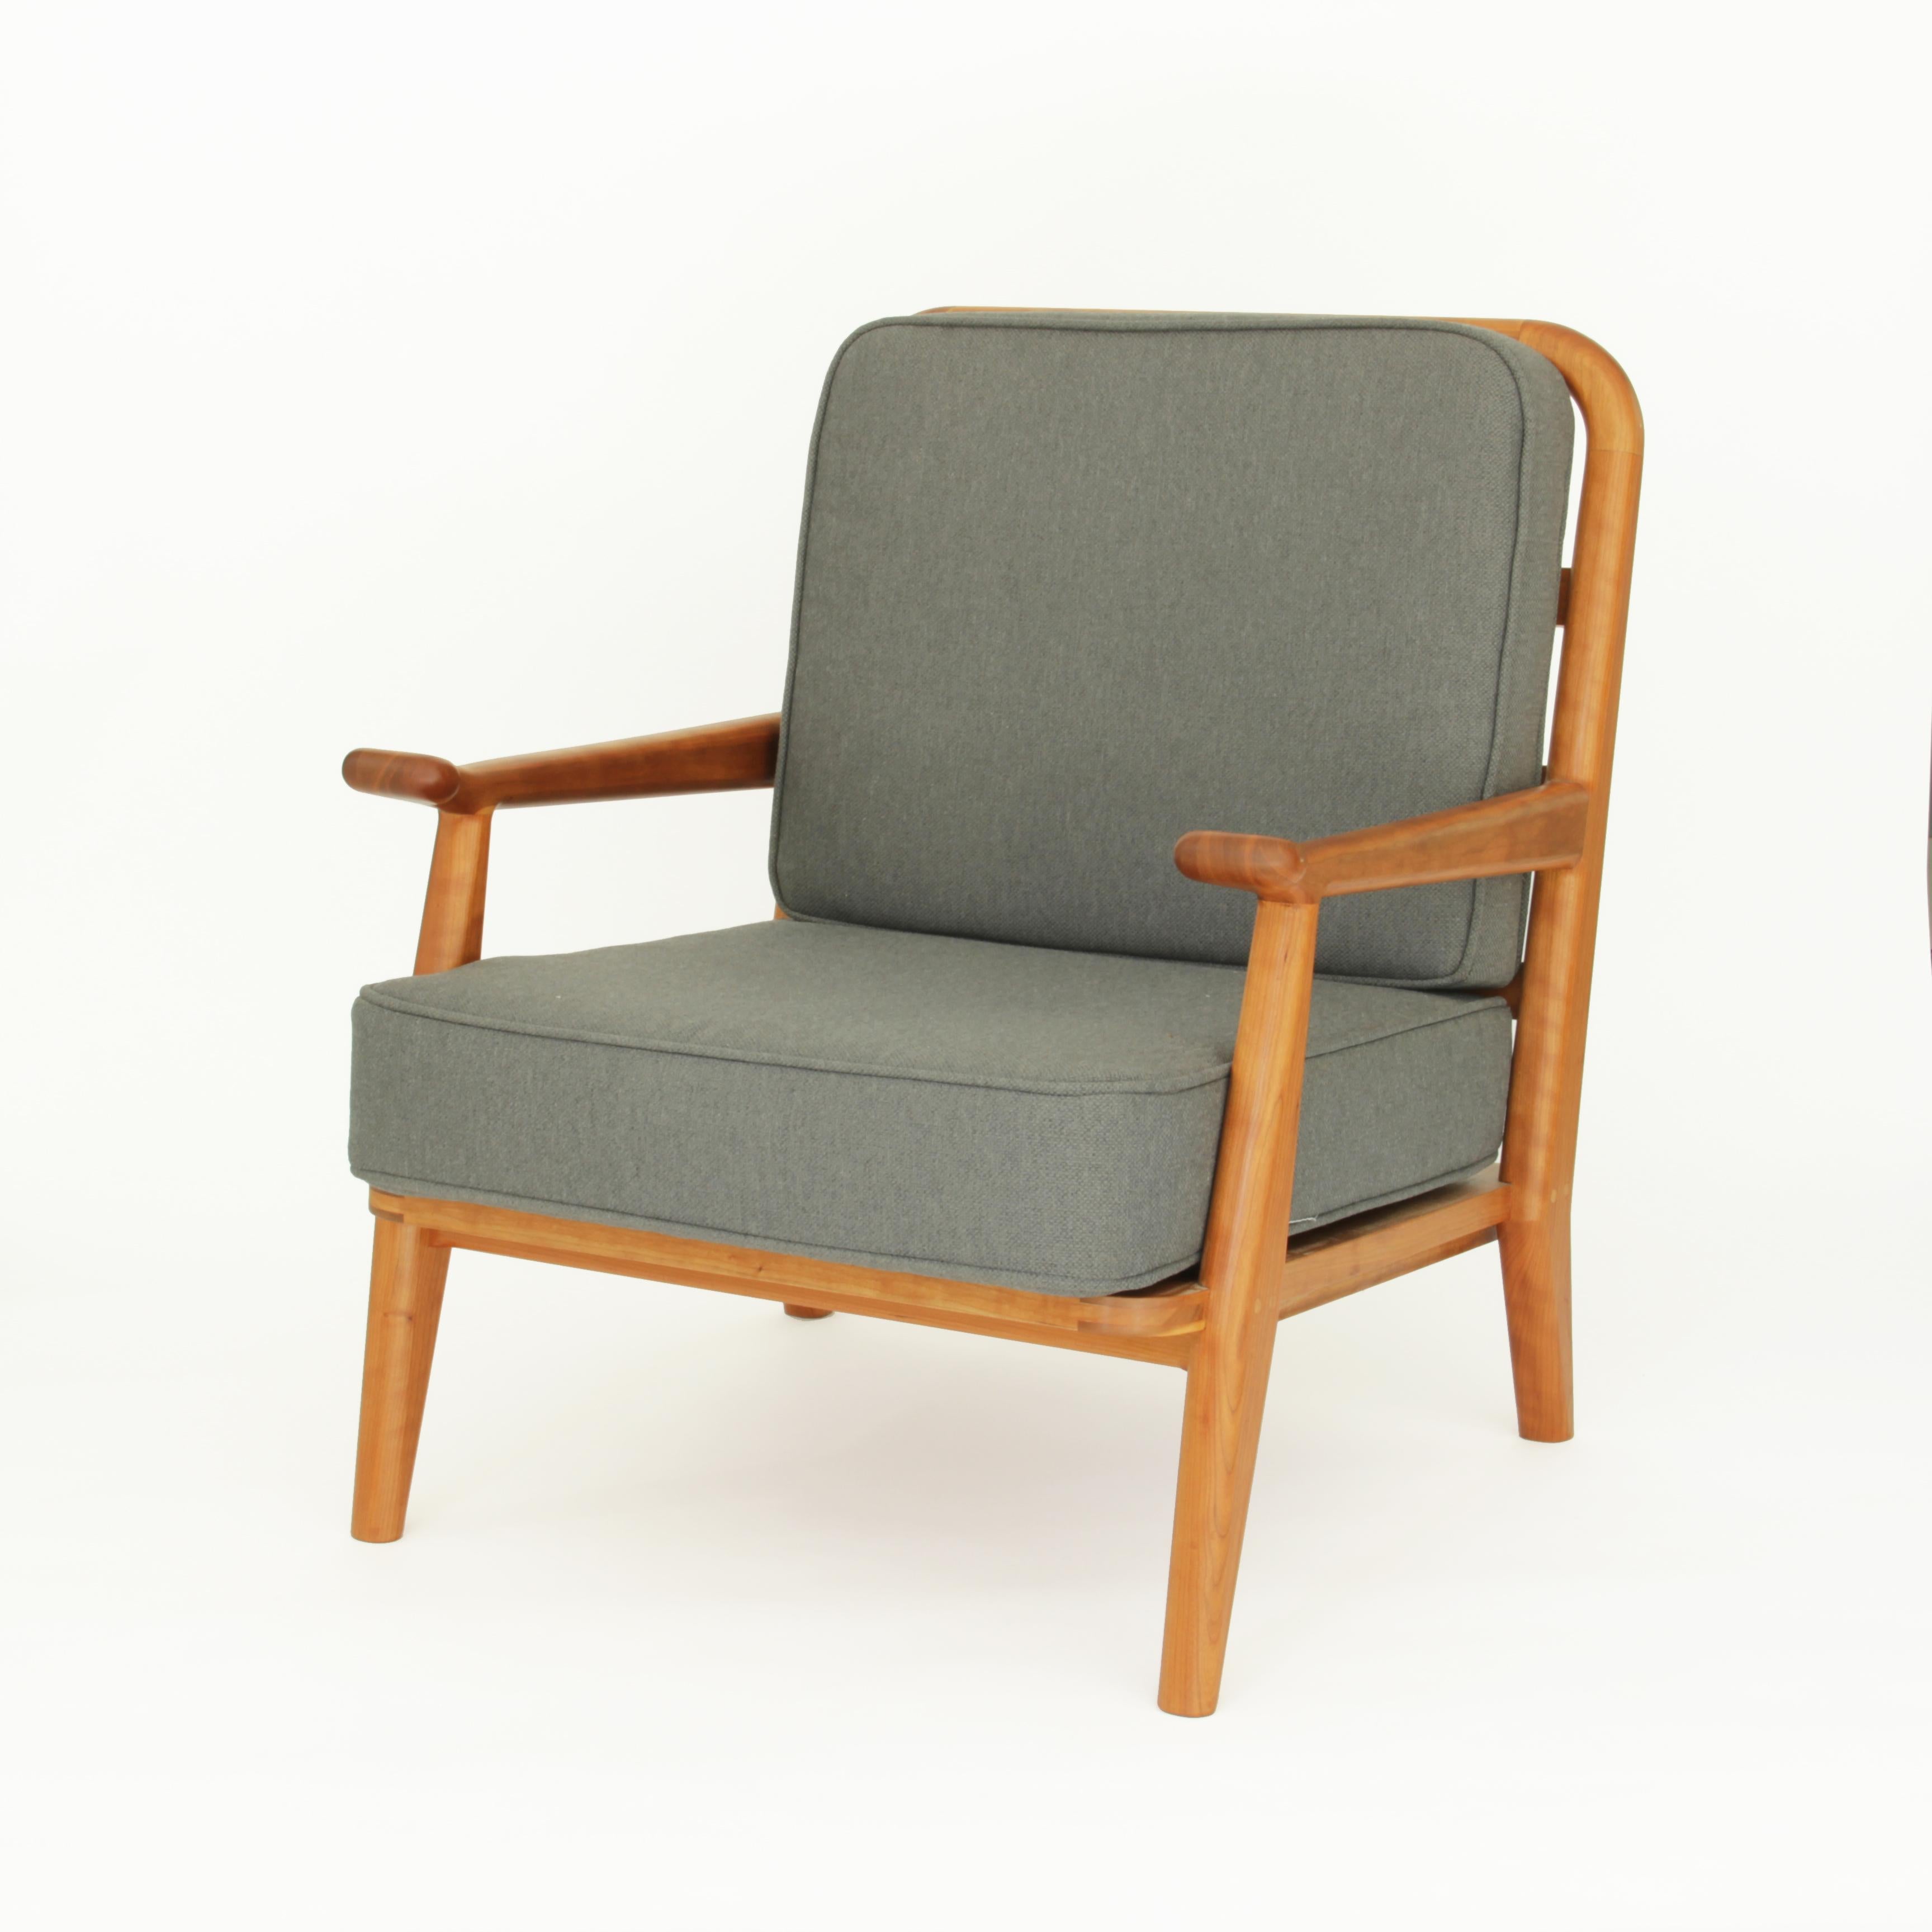 Dieser Sessel besteht aus Kirschholz und mit Wolle gepolsterten Kissen. Er wird News Chair genannt, weil die Armlehne mit einem paddelförmigen Griff versehen ist, der dazu einlädt, ihn zu ergreifen, je nachdem, welche guten oder schlechten